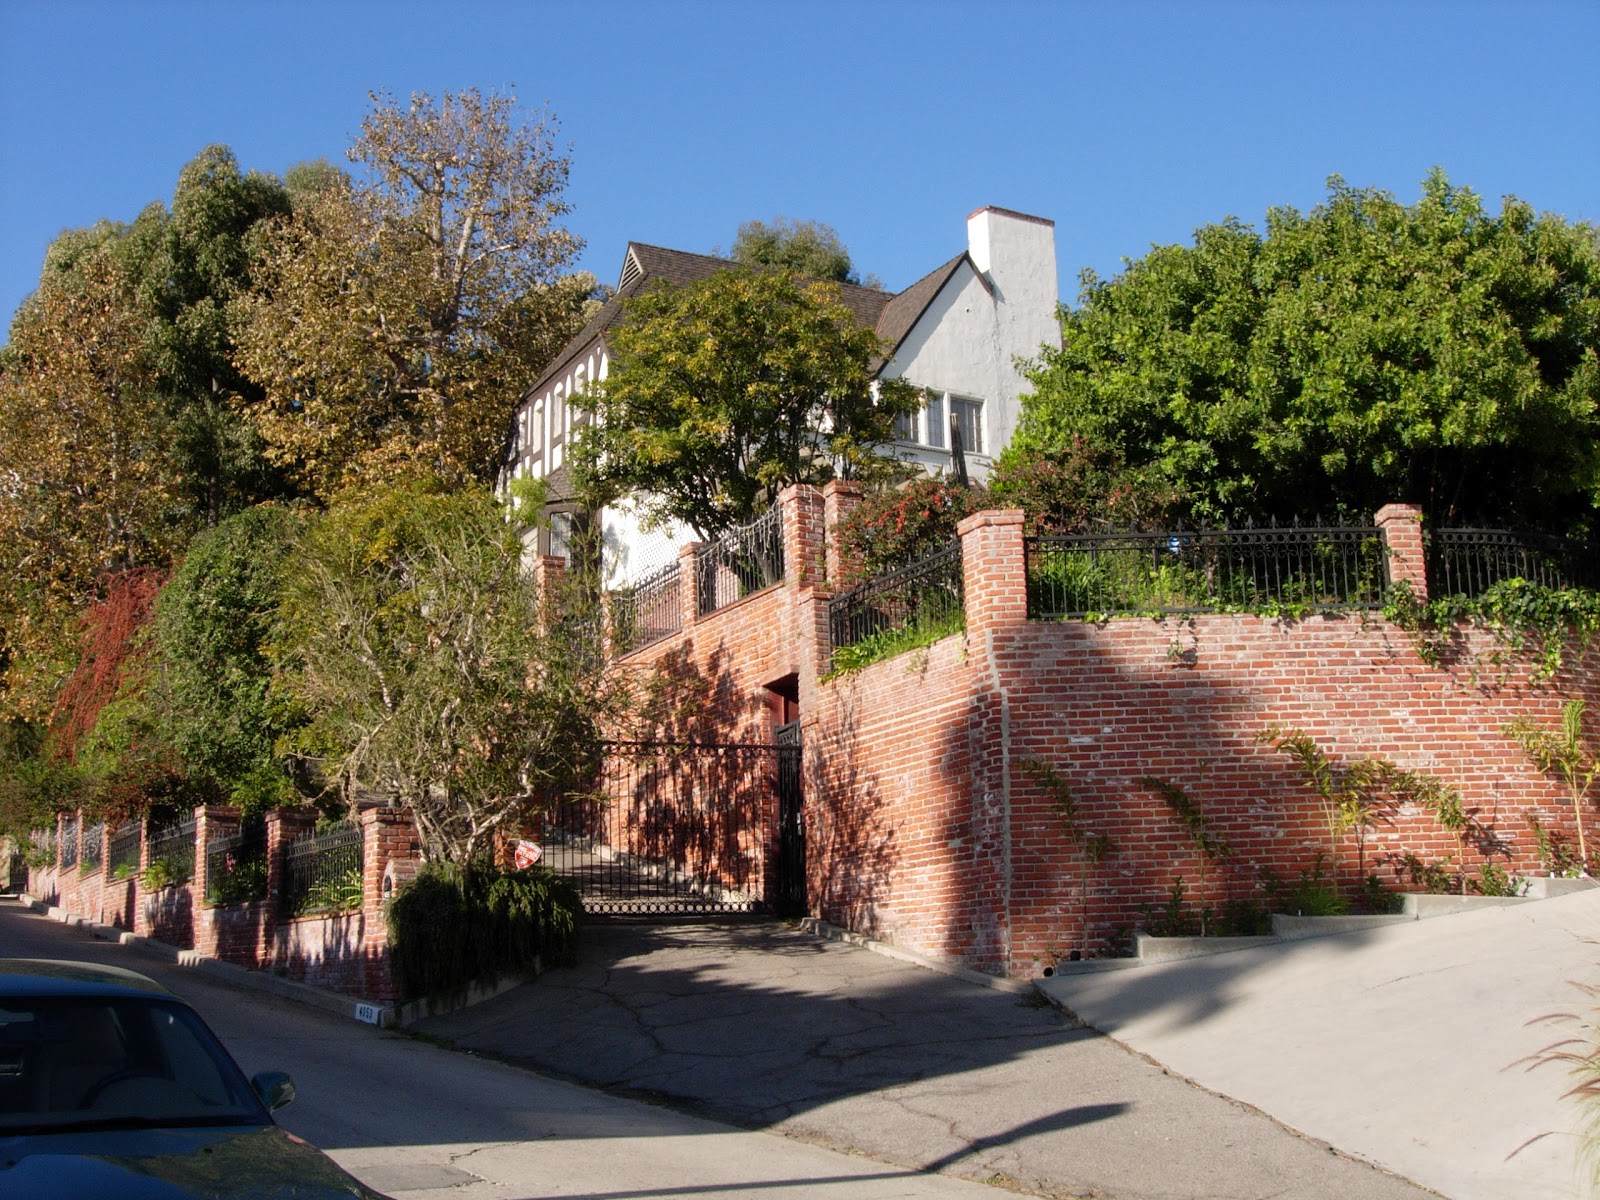 Came home early. Дом, в котором жил Уолт Дисней в Лос-Анджелесе. Особняк Уолта Диснея. Дом Уолта Диснея в Лос Анджелесе фото. Дом Уолта Диснея в Лос Анджелесе изнутри.